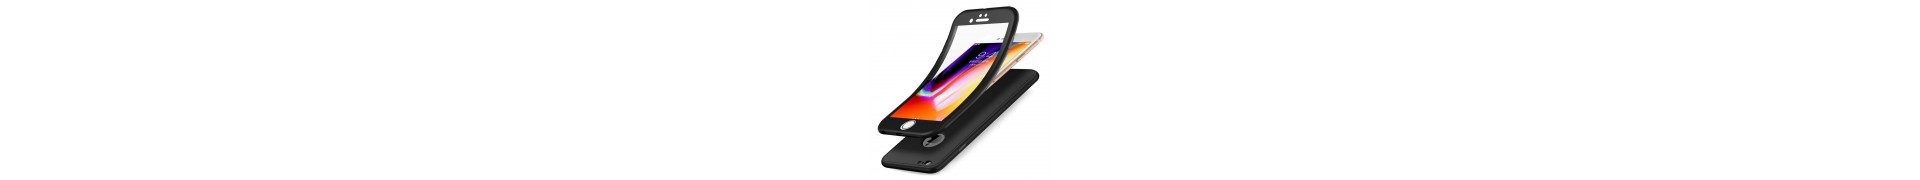 Coque intégrale 360° en silicone gel pour smartphone